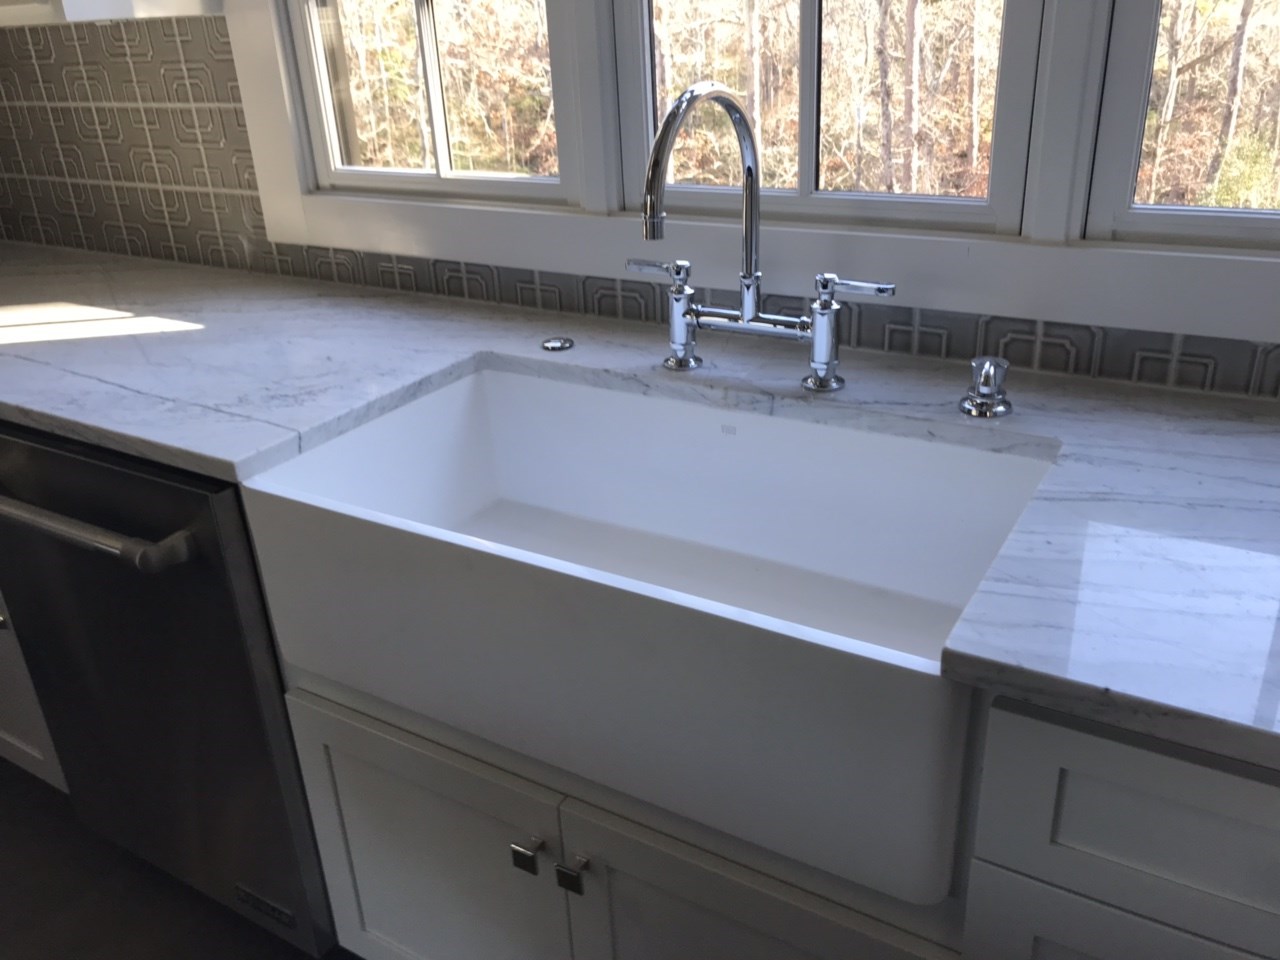 8-apron sink with bridge faucet